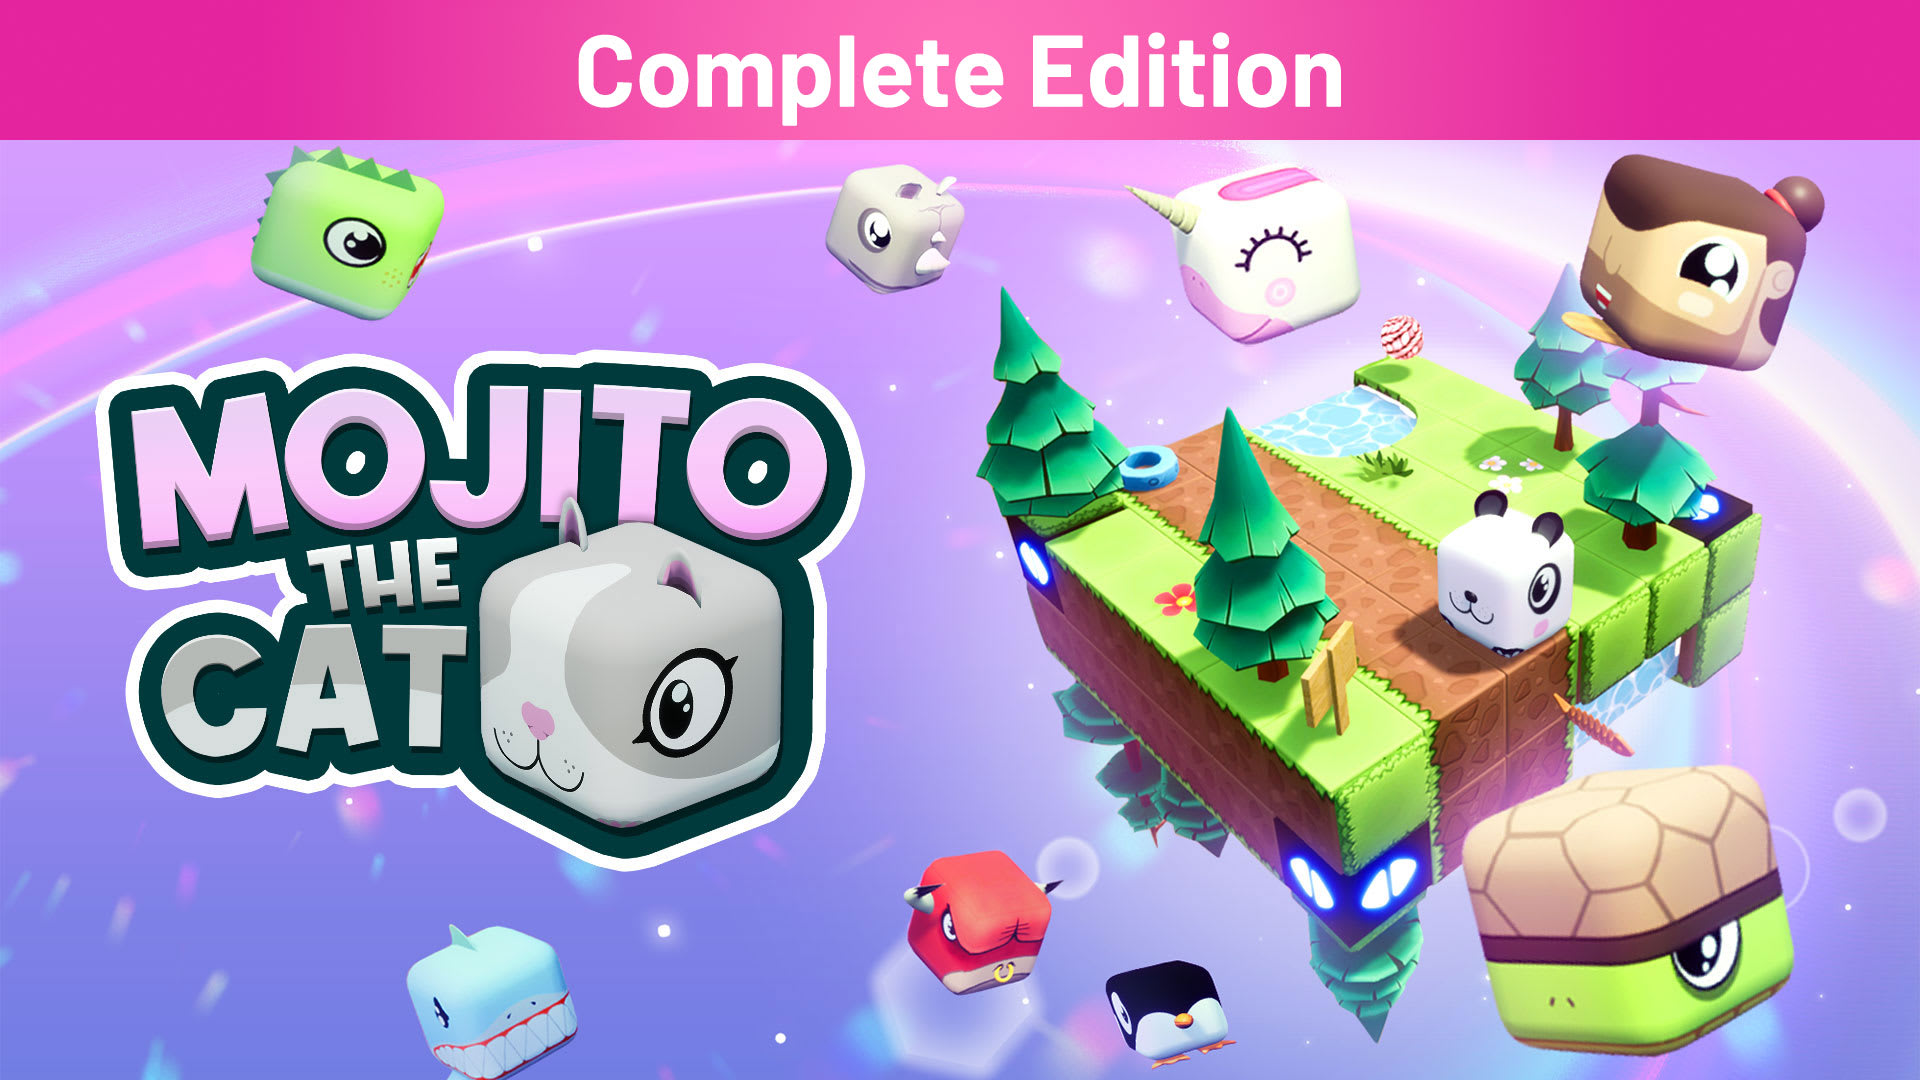 Mojito the Cat Complete Edition